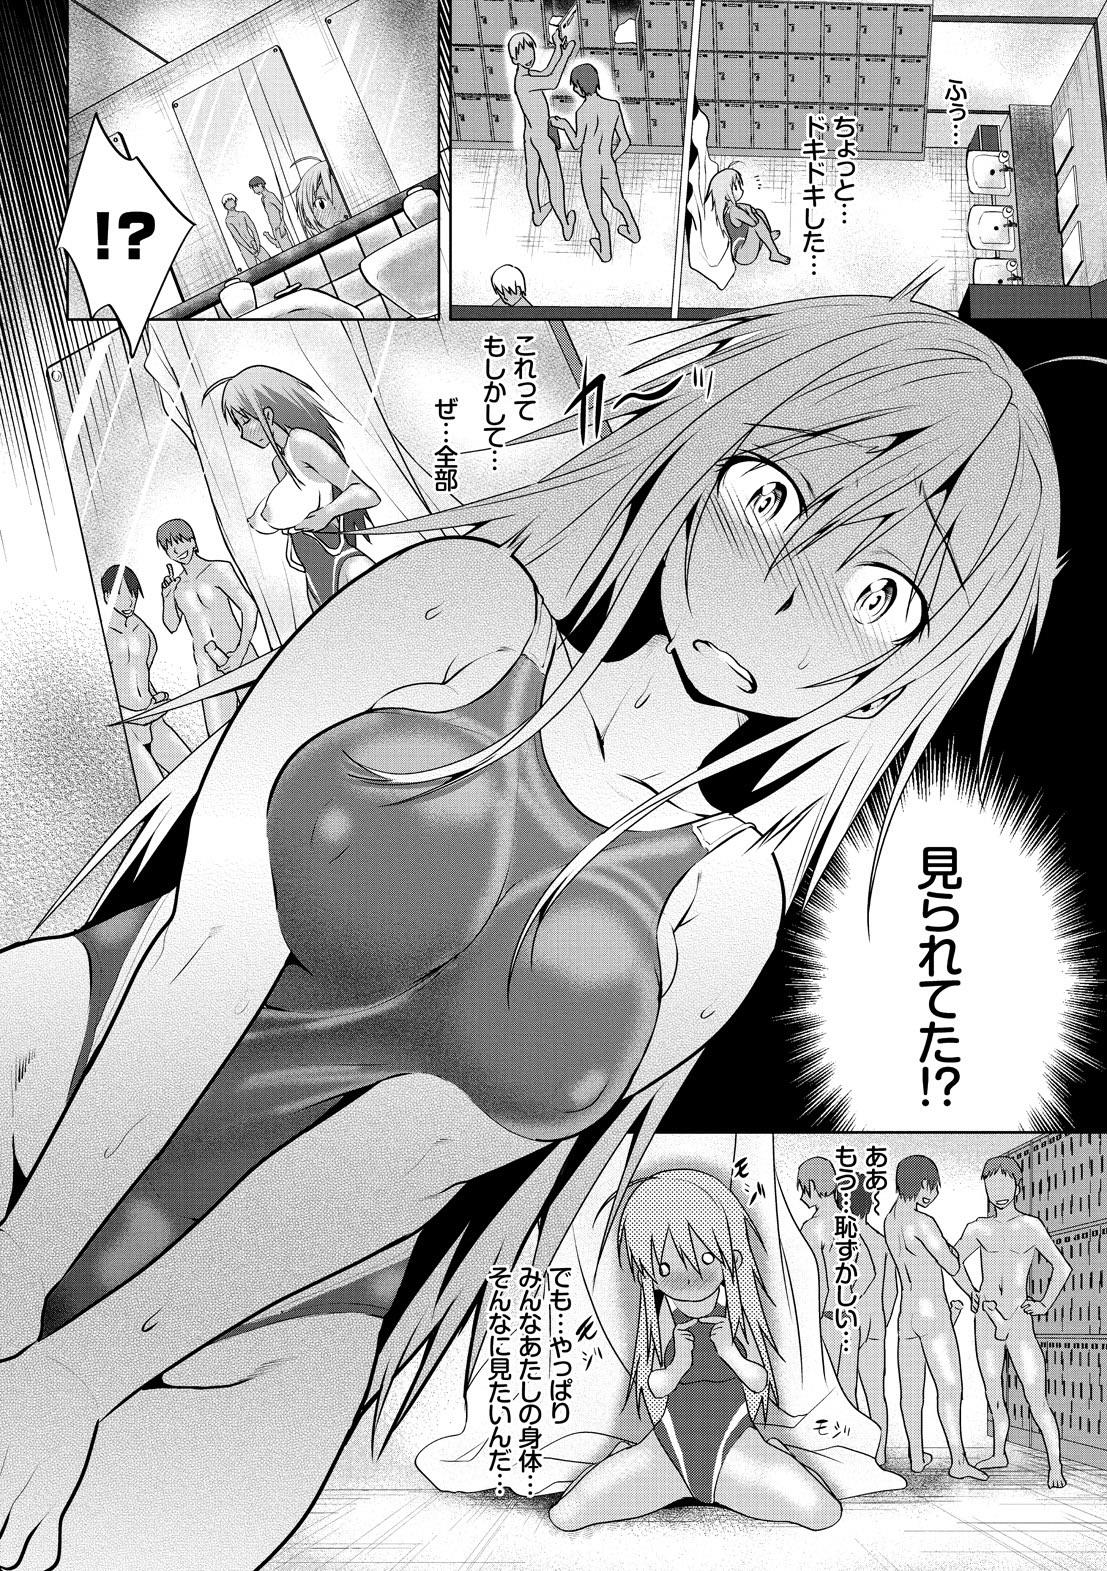 [Anthology] Yappari Mizugi Bishoujo ga Suki VOL. 1 page 30 full